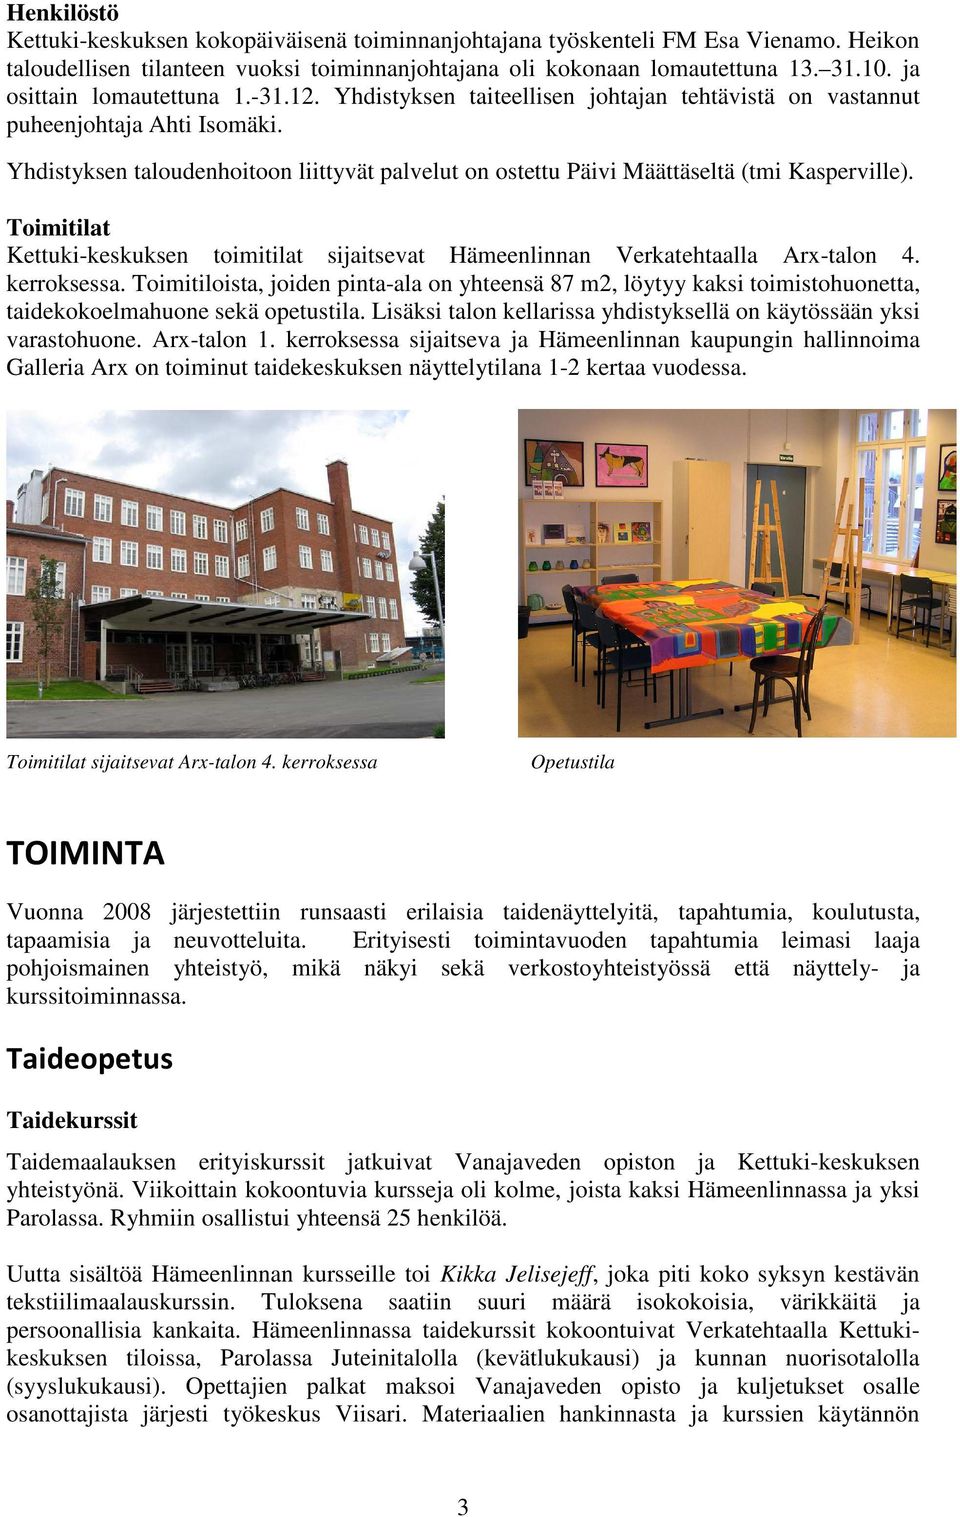 Yhdistyksen taloudenhoitoon liittyvät palvelut on ostettu Päivi Määttäseltä (tmi Kasperville). Toimitilat Kettuki-keskuksen toimitilat sijaitsevat Hämeenlinnan Verkatehtaalla Arx-talon 4. kerroksessa.